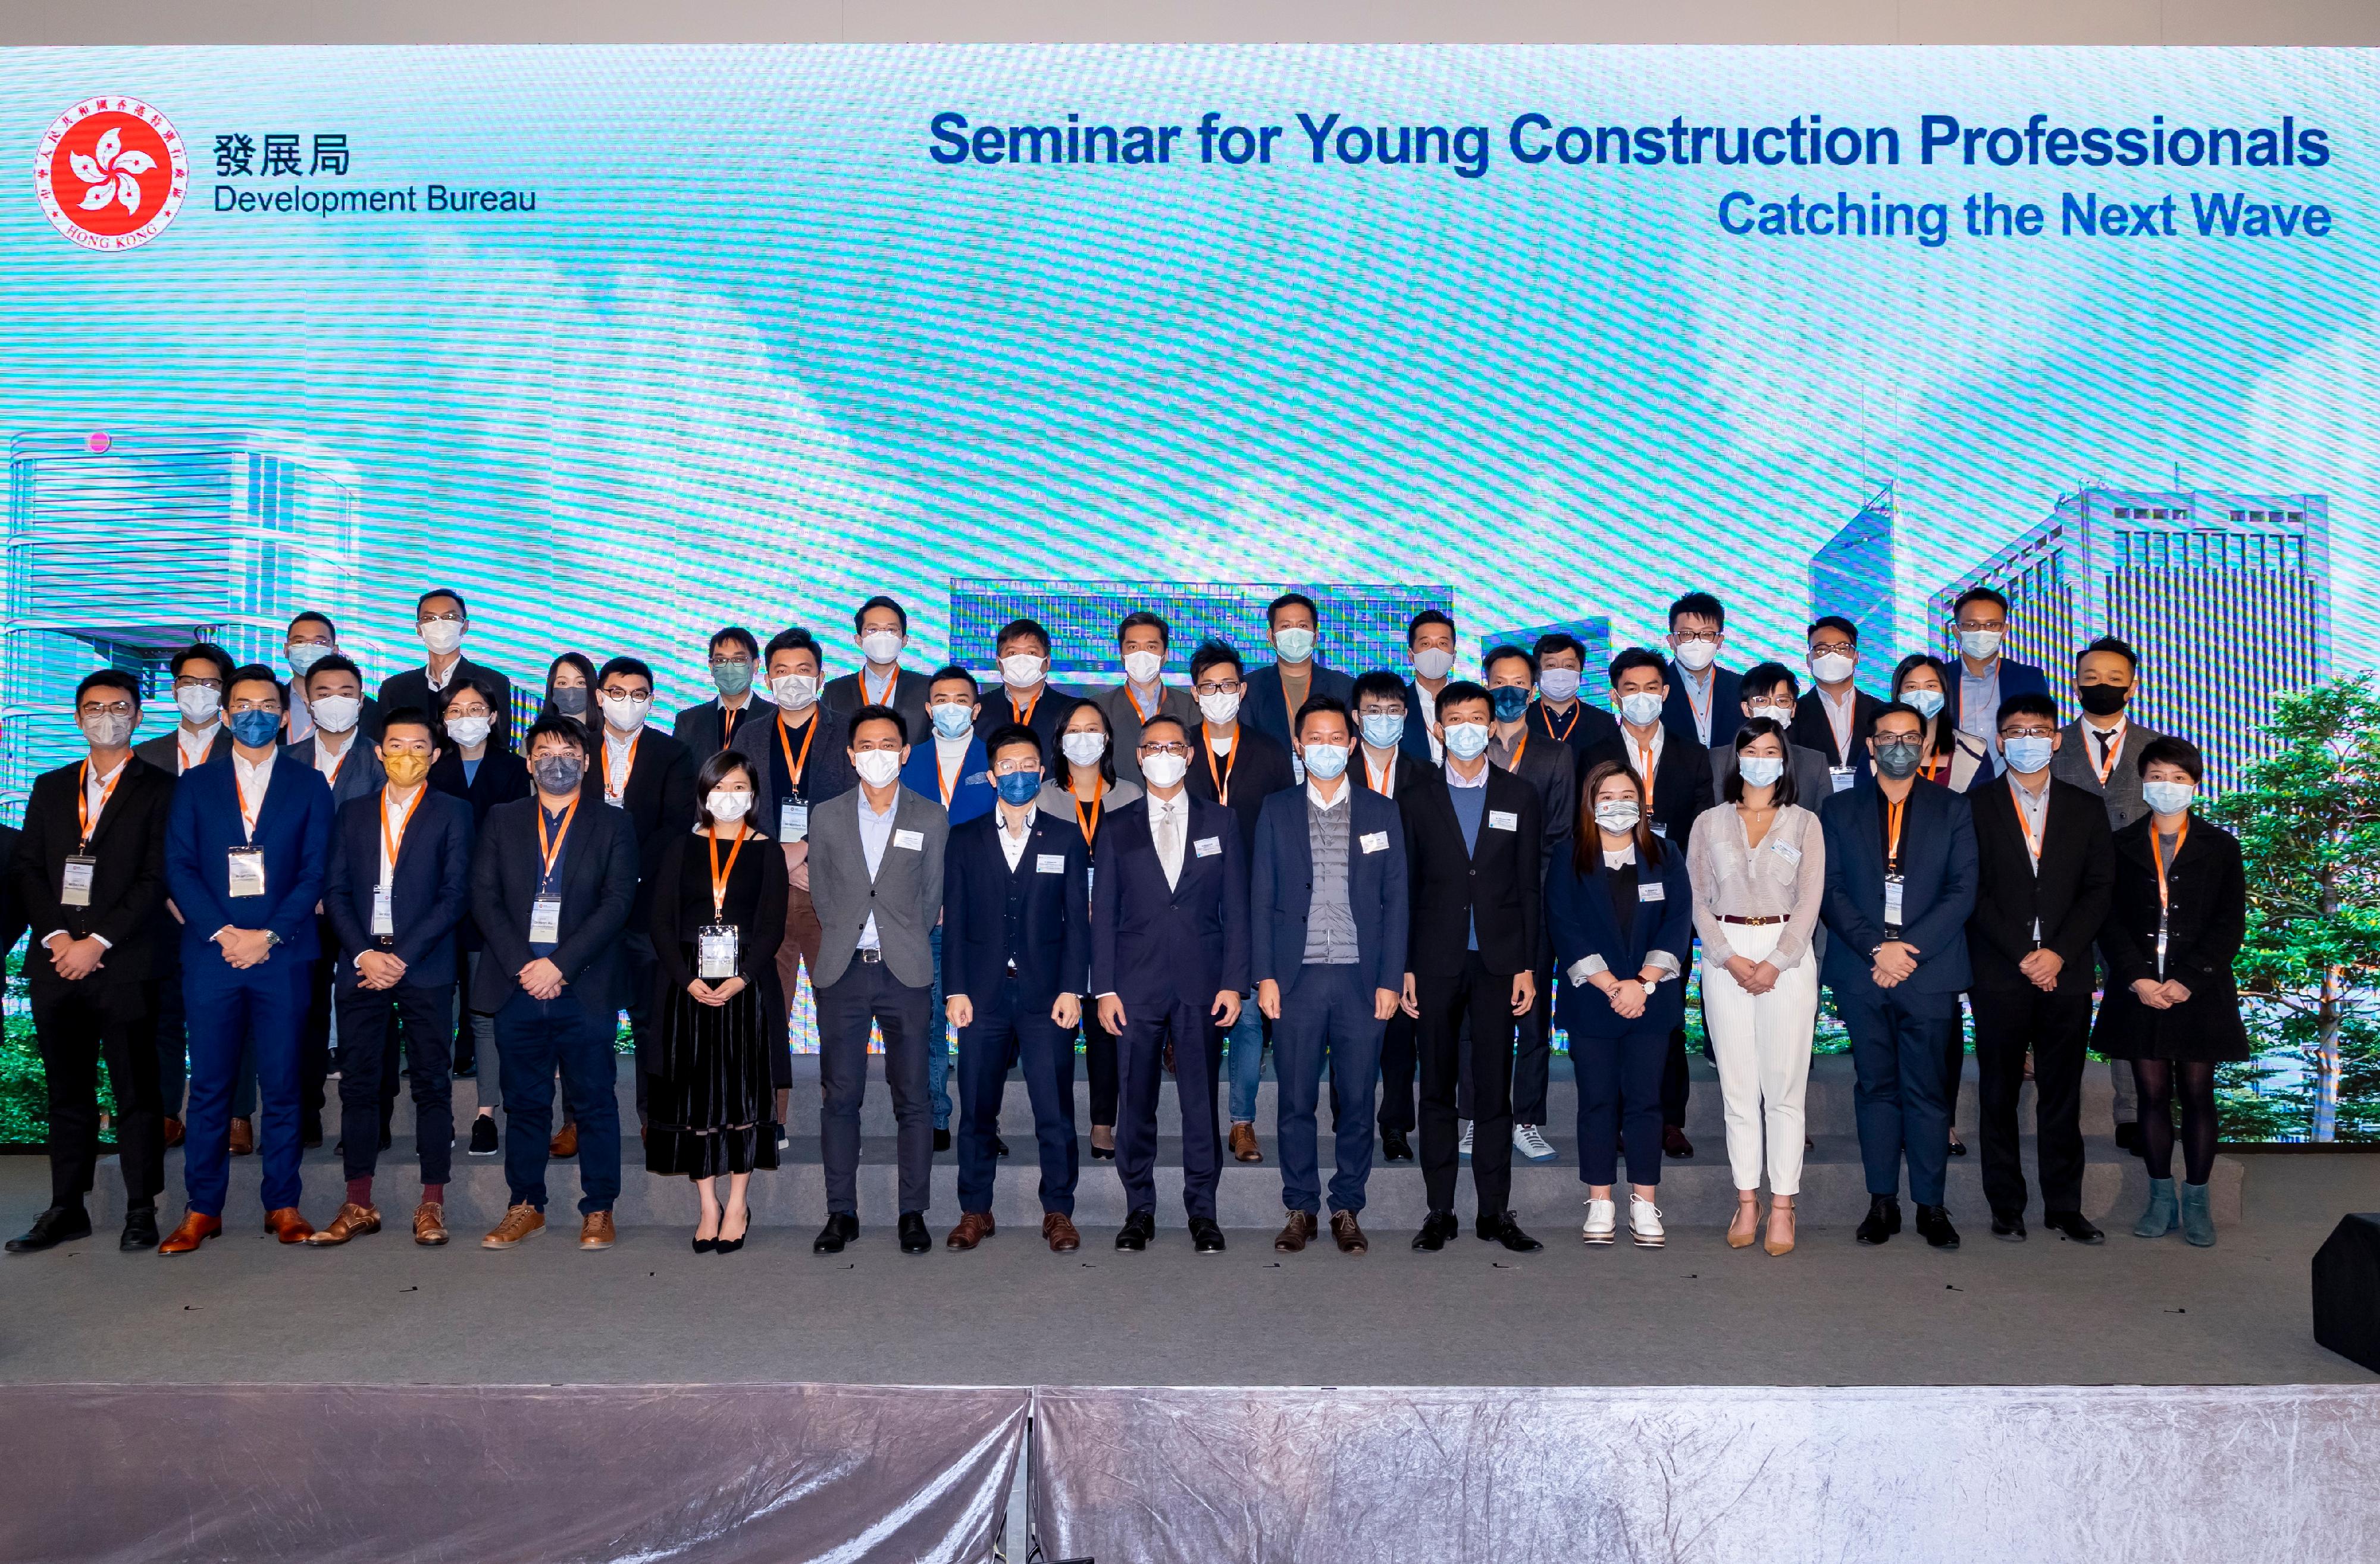 发展局今日（十二月一日）为年轻的建造业专业人士举办研讨会。图示发展局常任秘书长（工务）刘俊杰（前排左八）与一众年轻建造业专业人士合照。